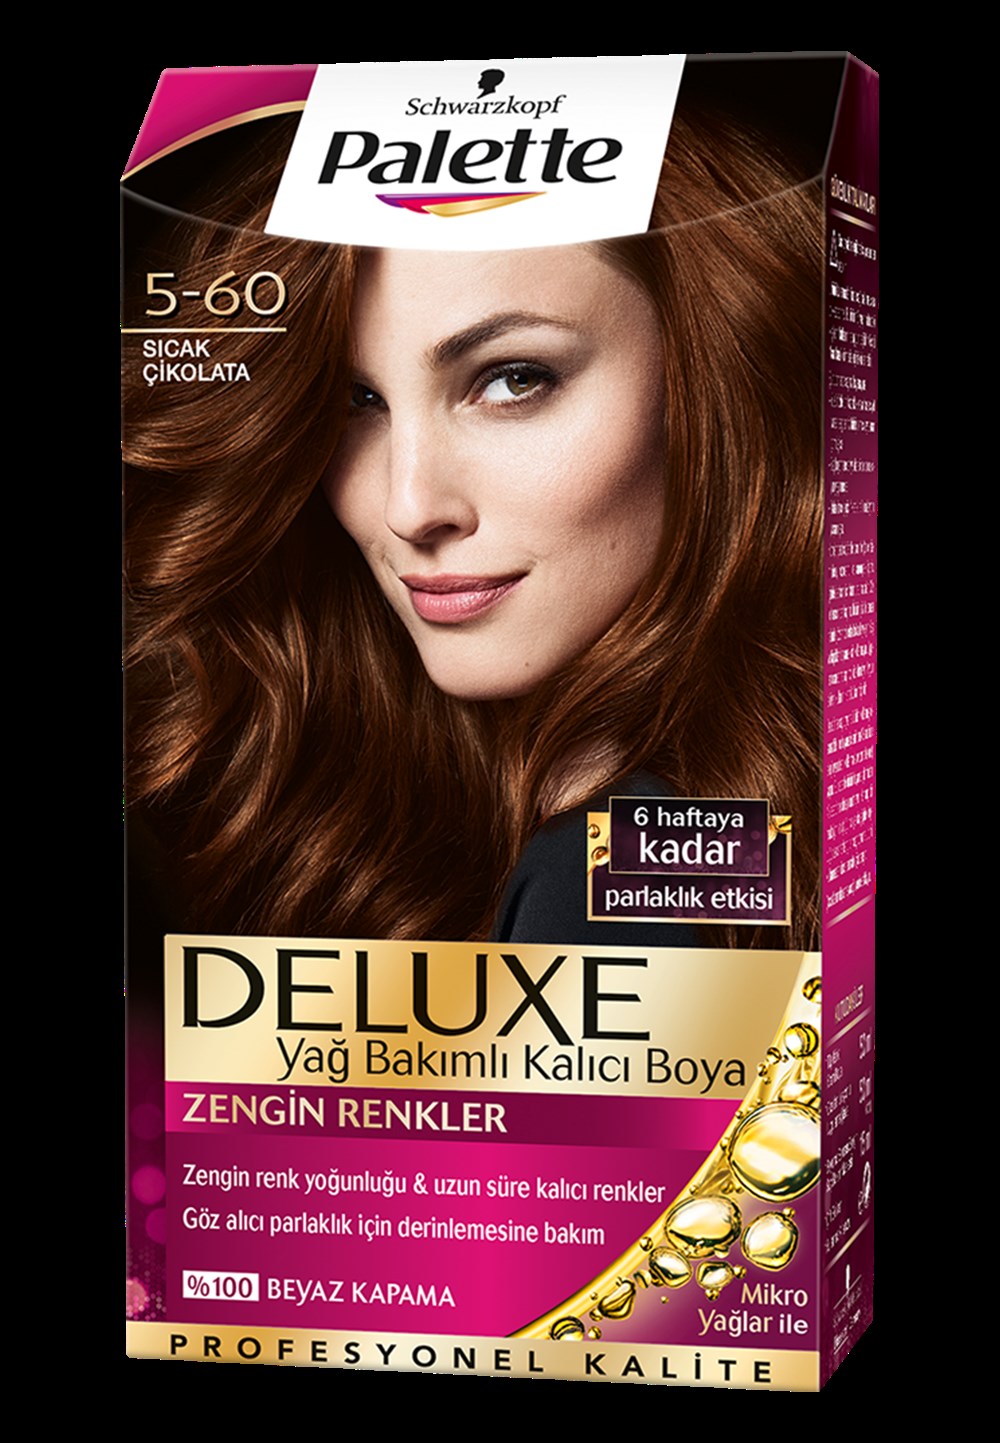 Palette Deluxe Saç Boyası 5-60 Sıcak Cikolata | Netegir.com